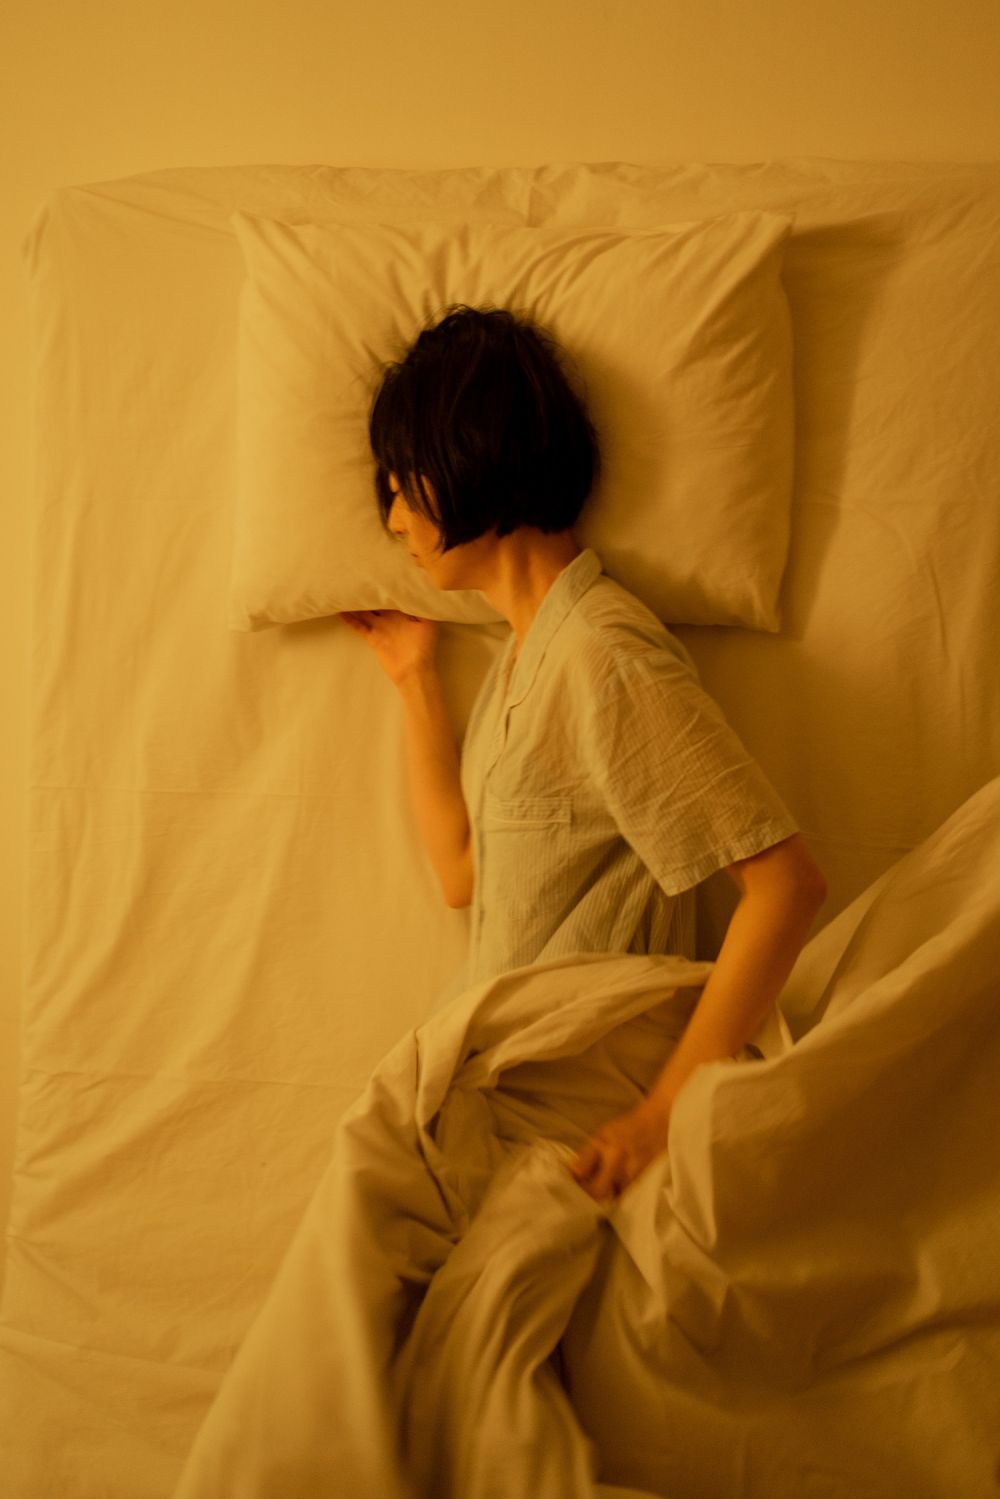 Sleep Paralysis: Benarkah karena Ketindihan Makhluk Halus?